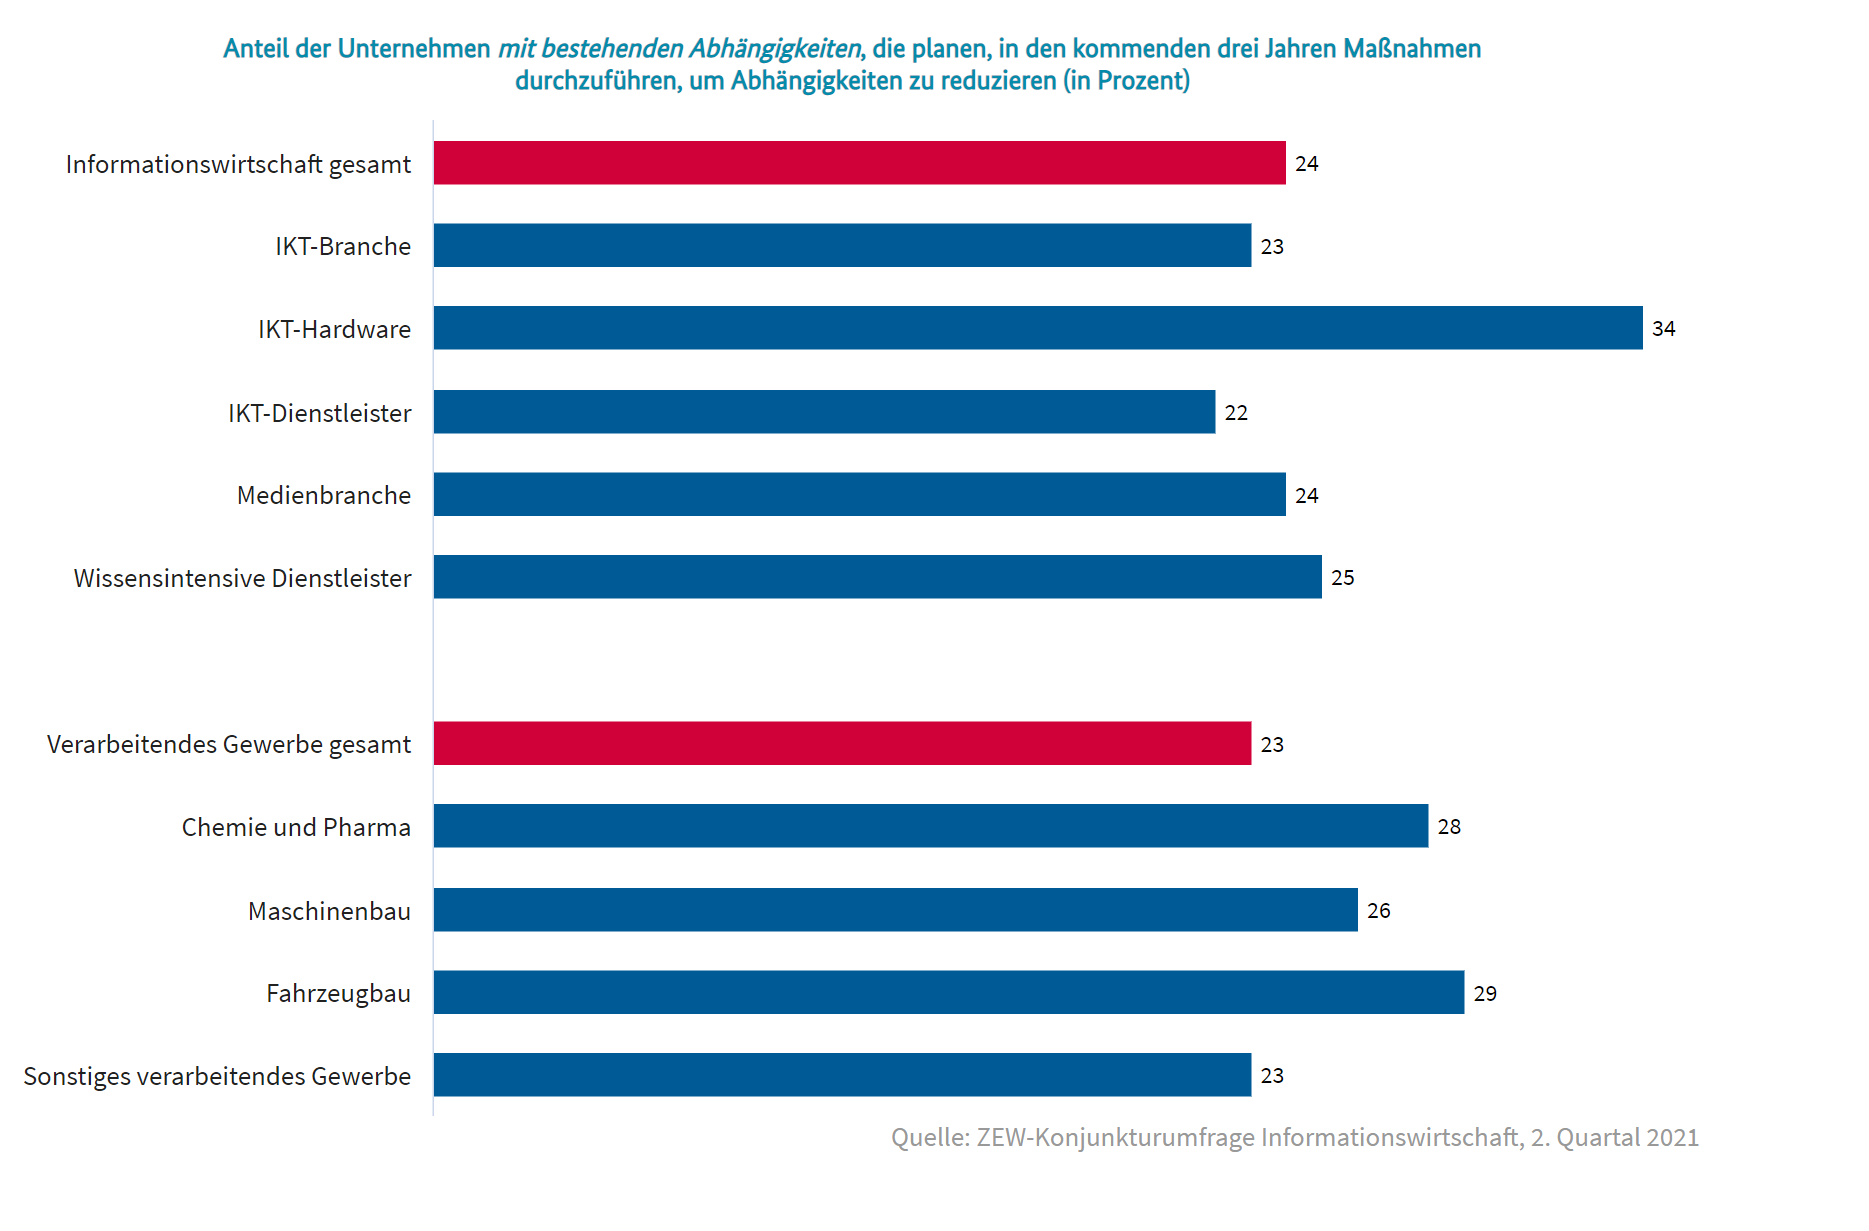 Anteil der Unternehmen mit bestehenden Abhängigkeiten, die planen, in den kommenden drei Jahren Maßnahmen durchzuführen, um Abhängigkeiten zu reduzieren (in Prozent)